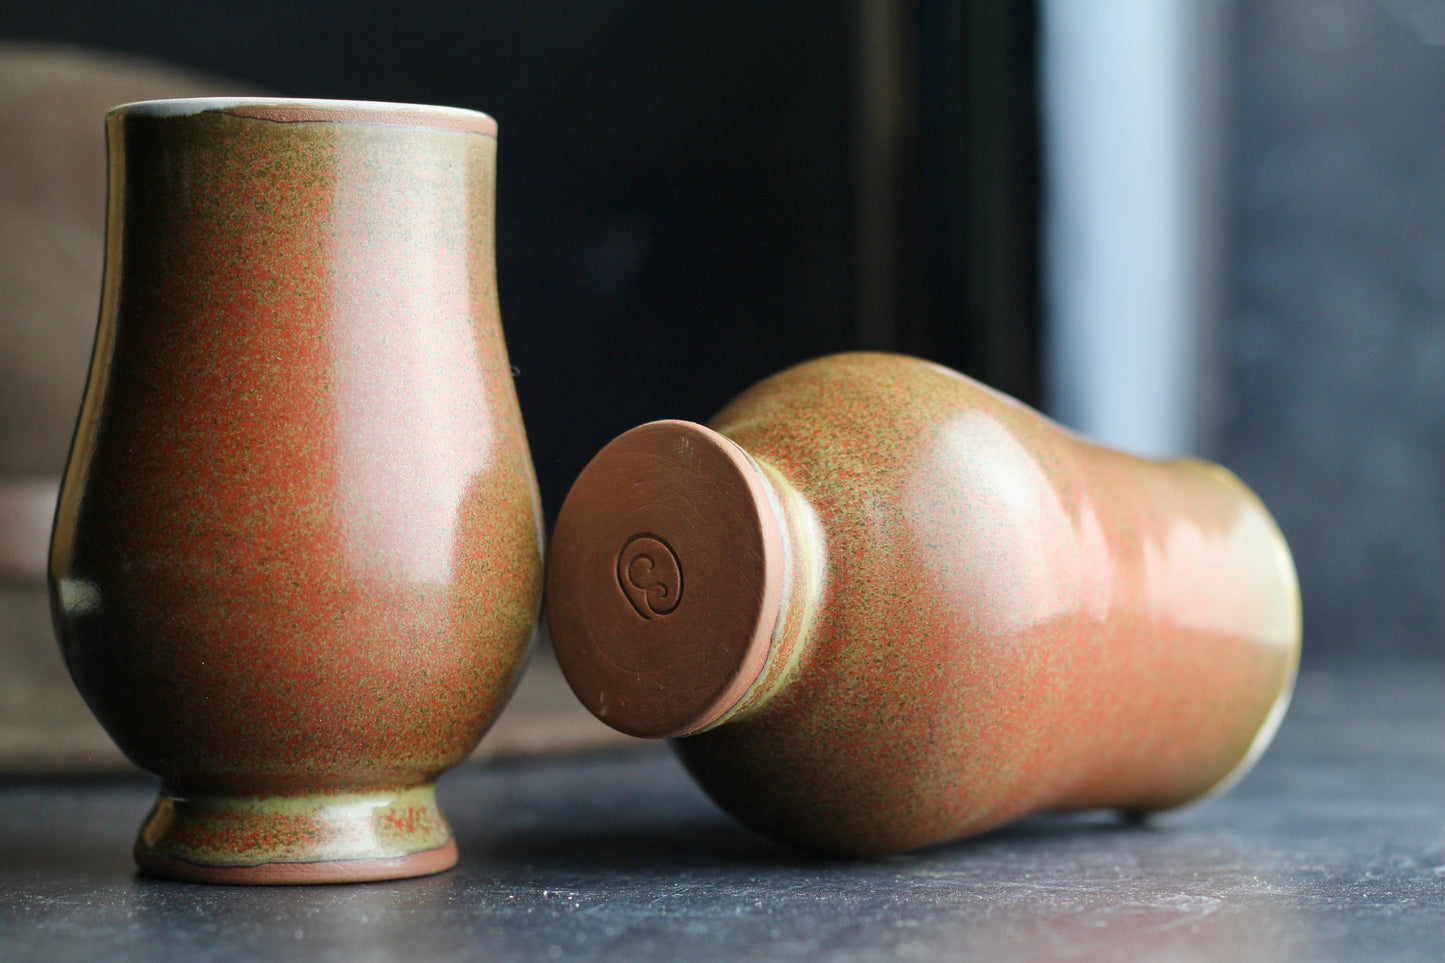 Ceramic Glencairn Tasting and Nosing Glass